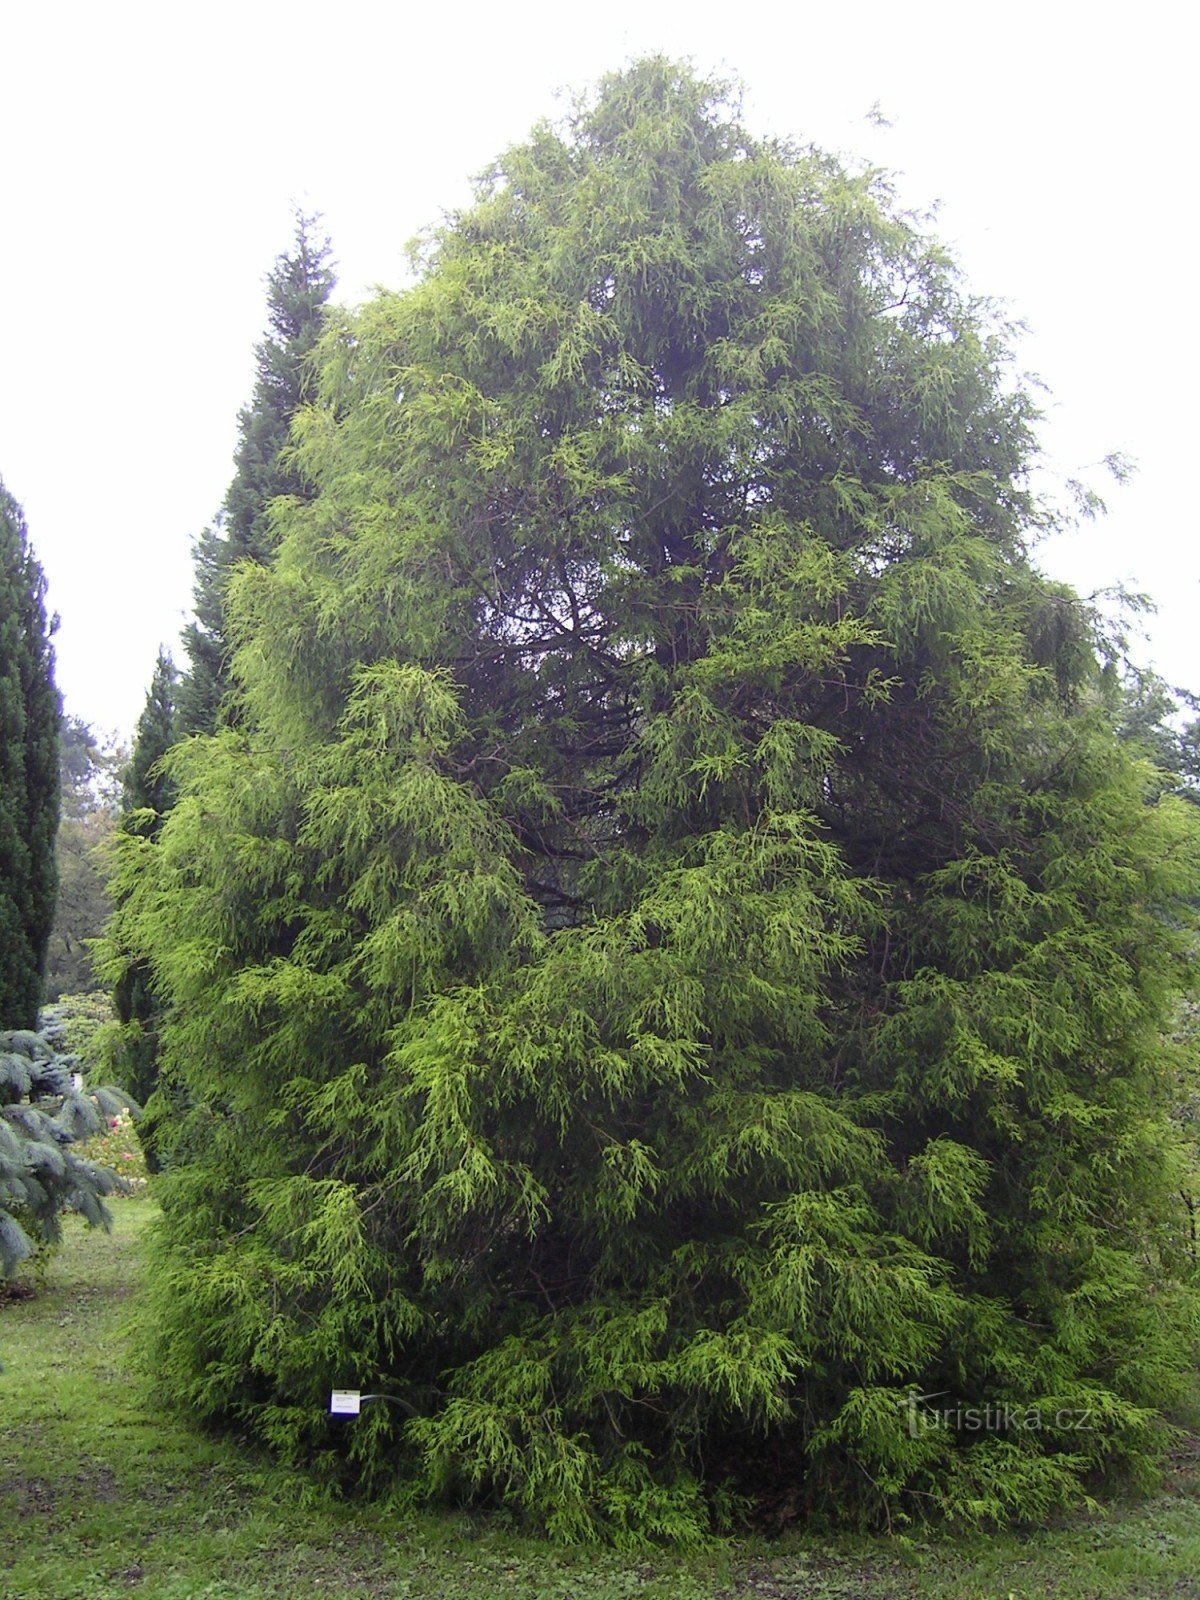 Botanical Garden of Liberec